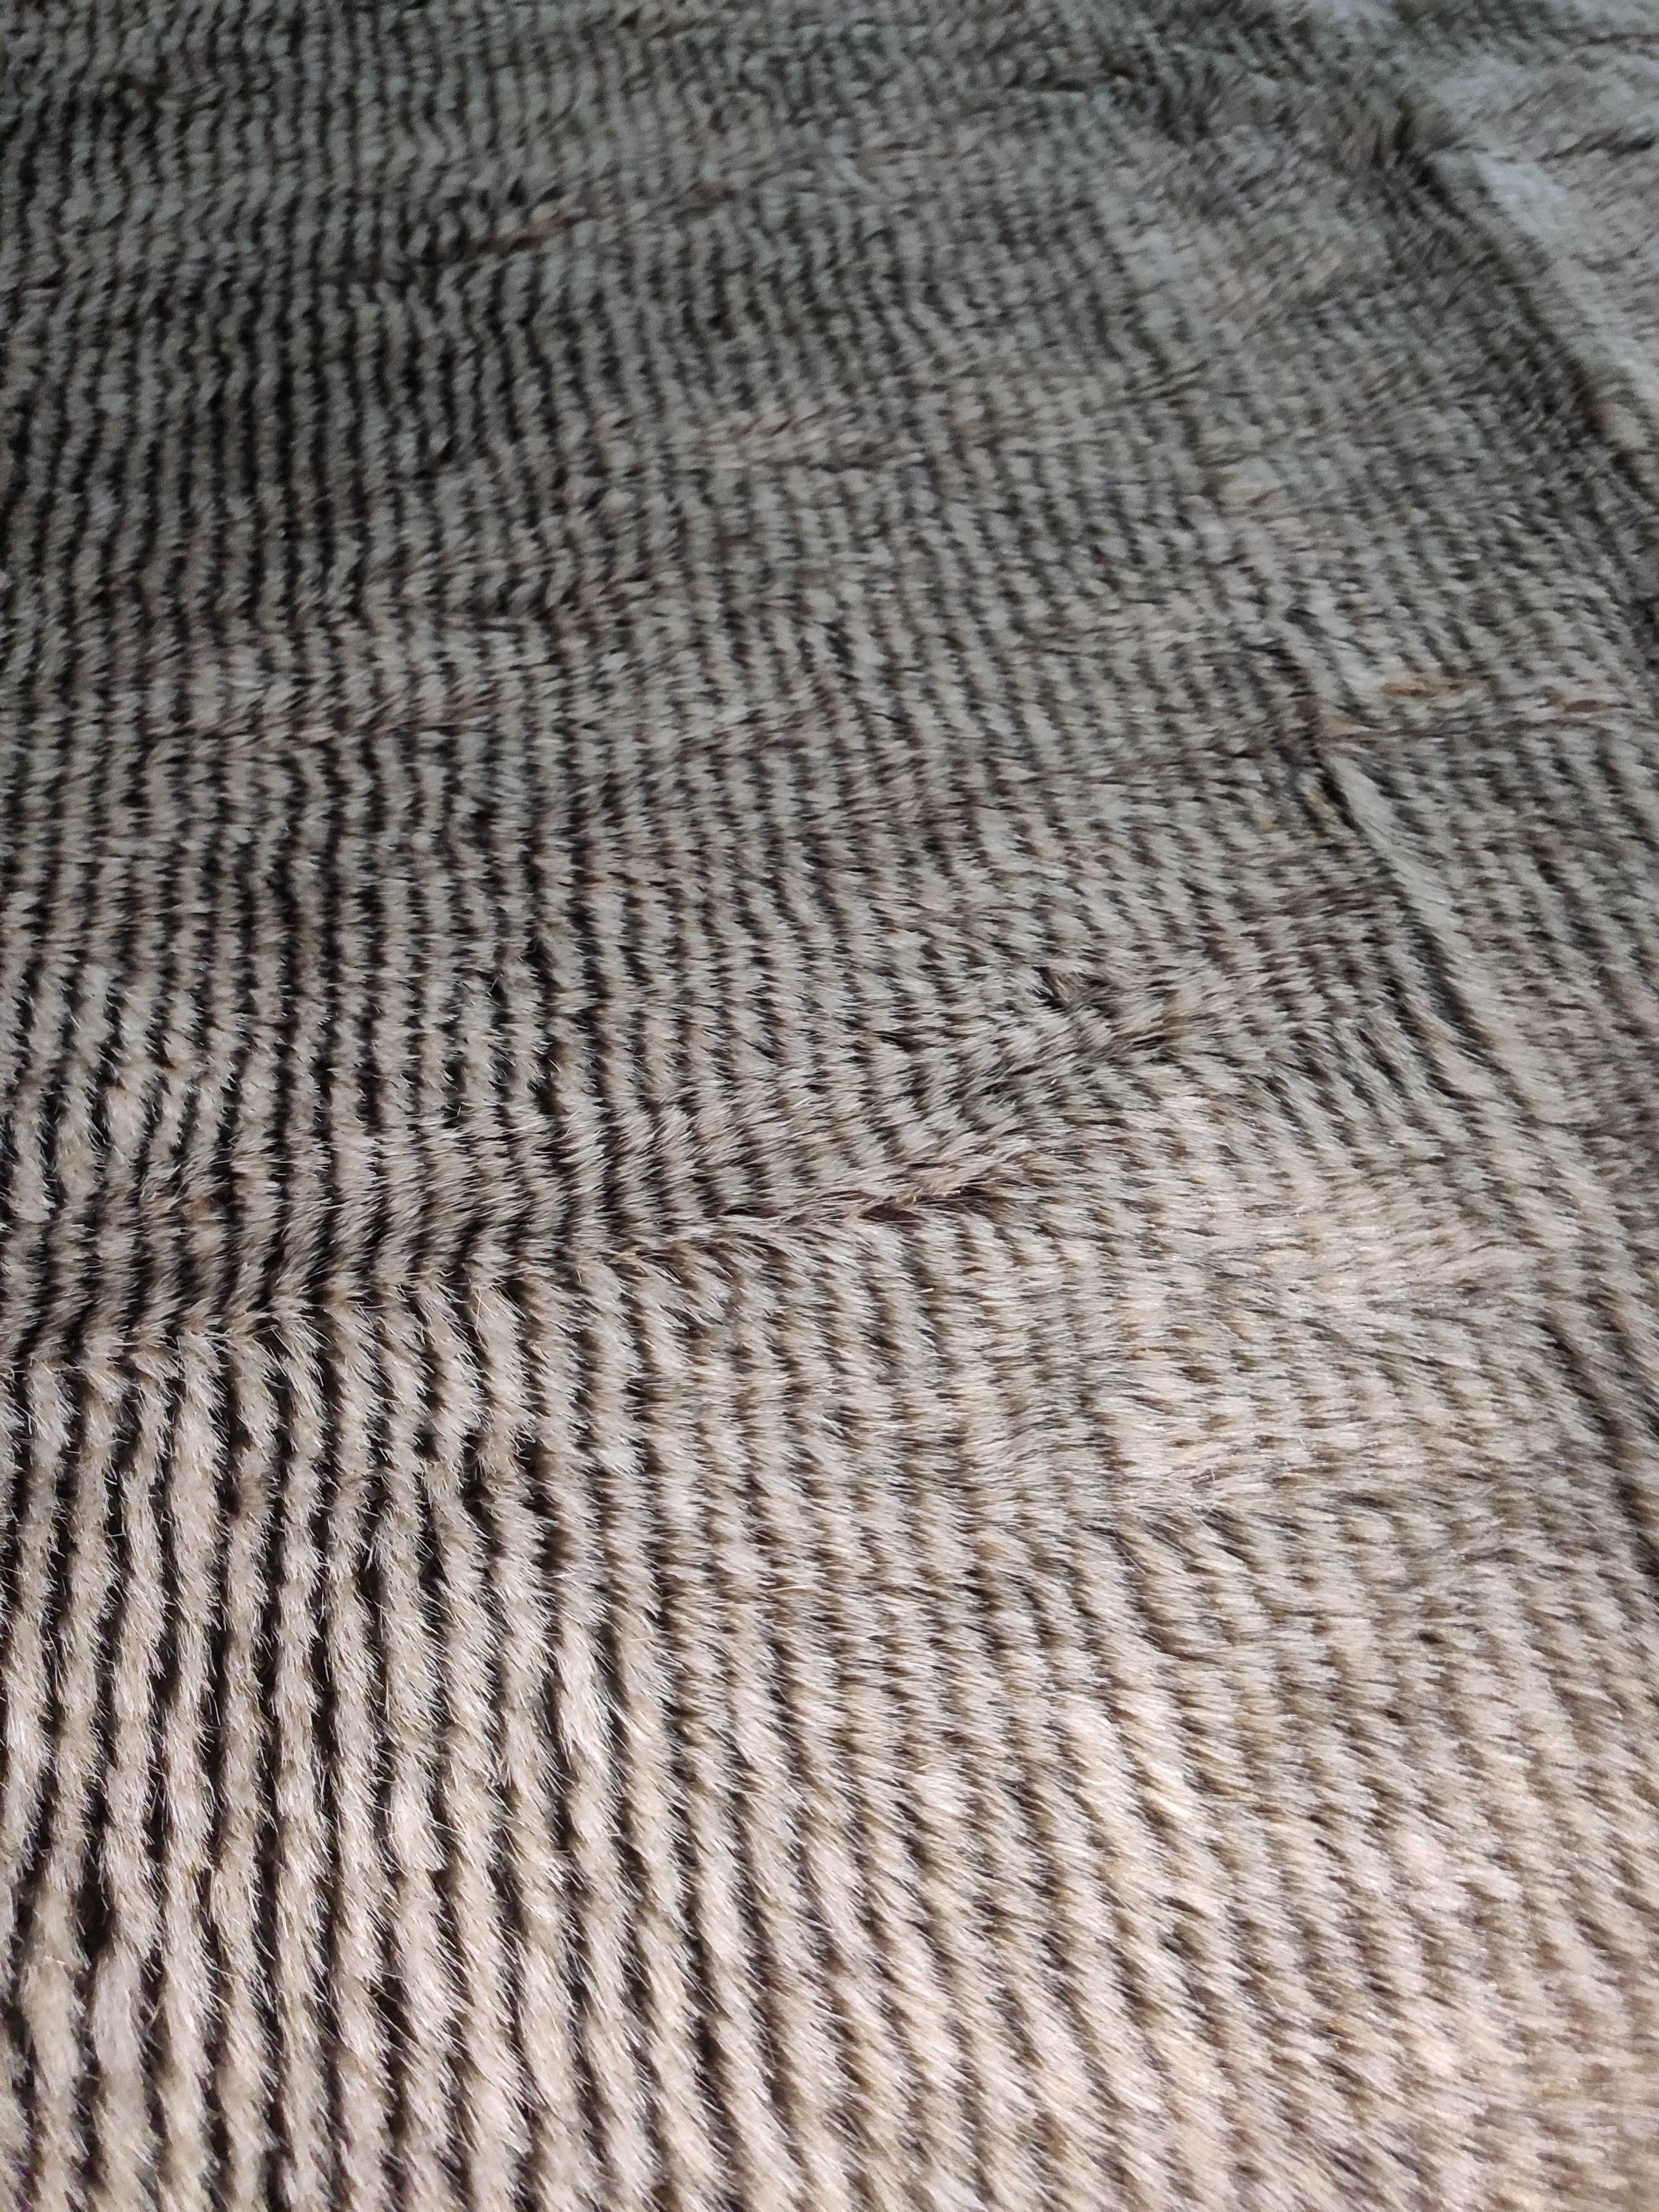 Tapete/Carpete - Grande - 2,30m X 1,60m - Novo